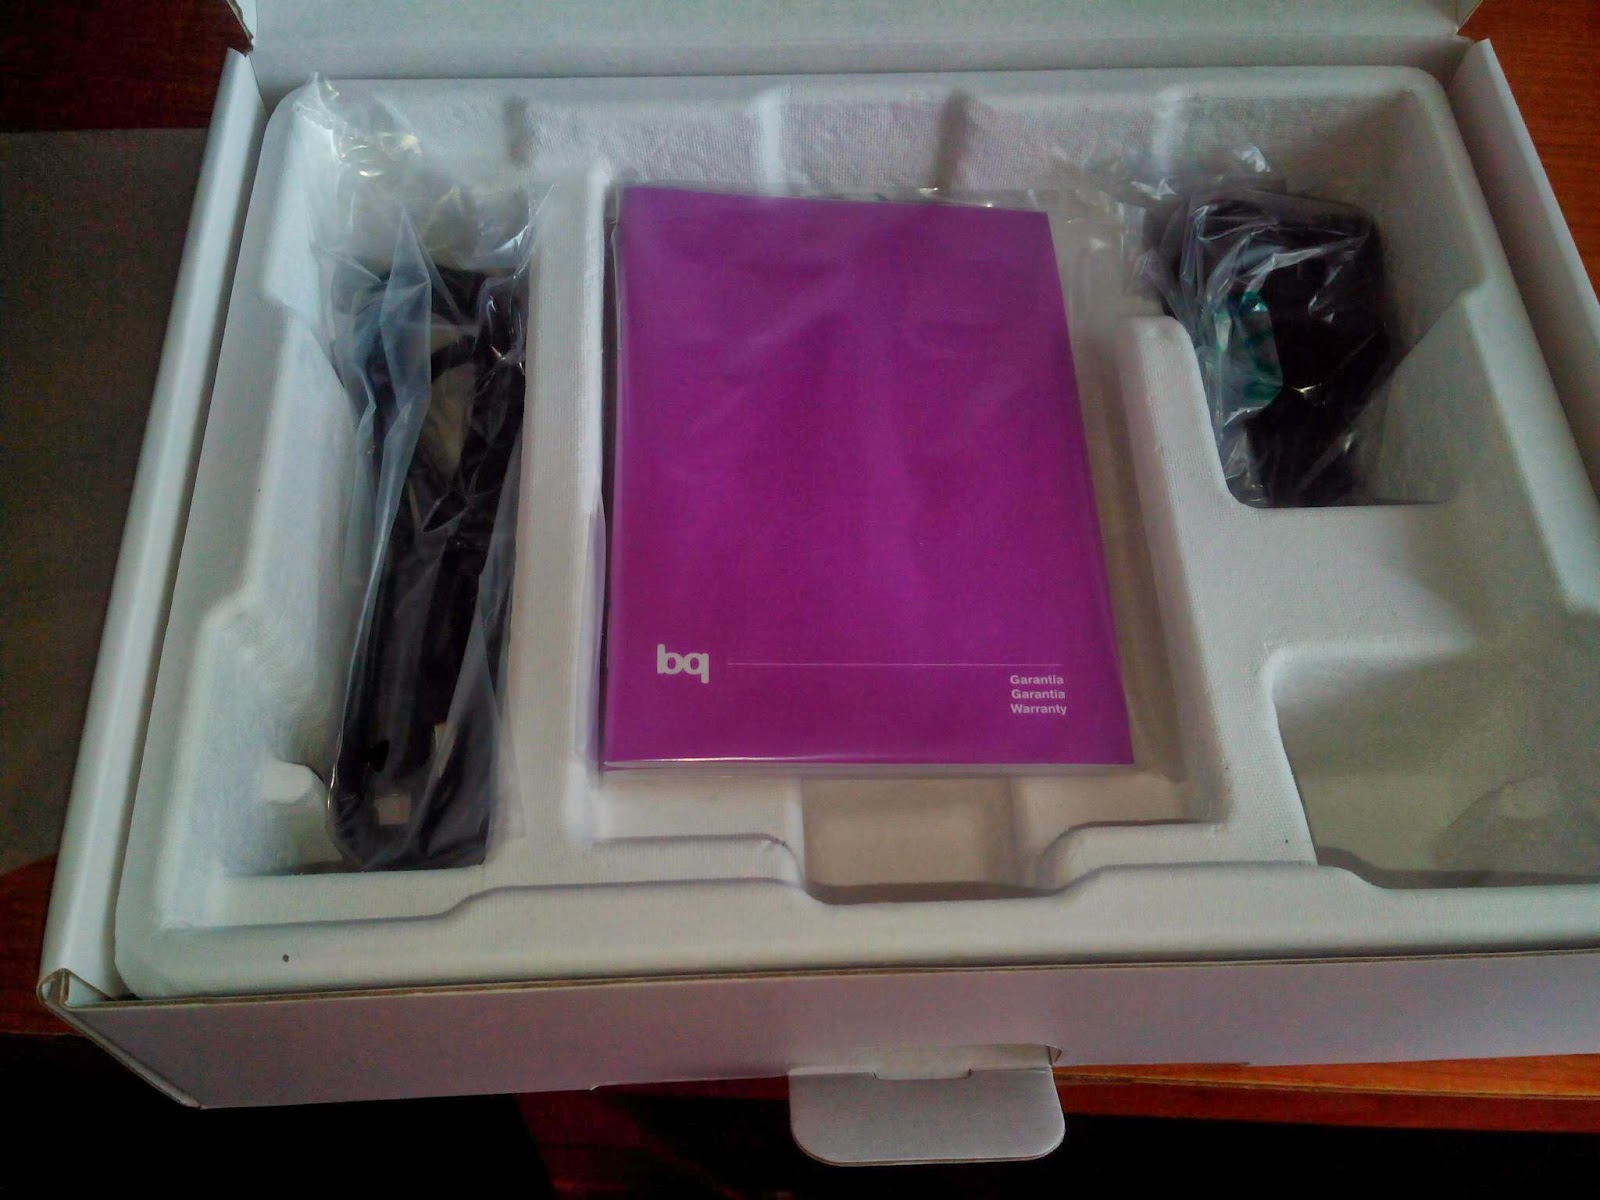 Tablet BQ Curie 2 quadcore interior caja